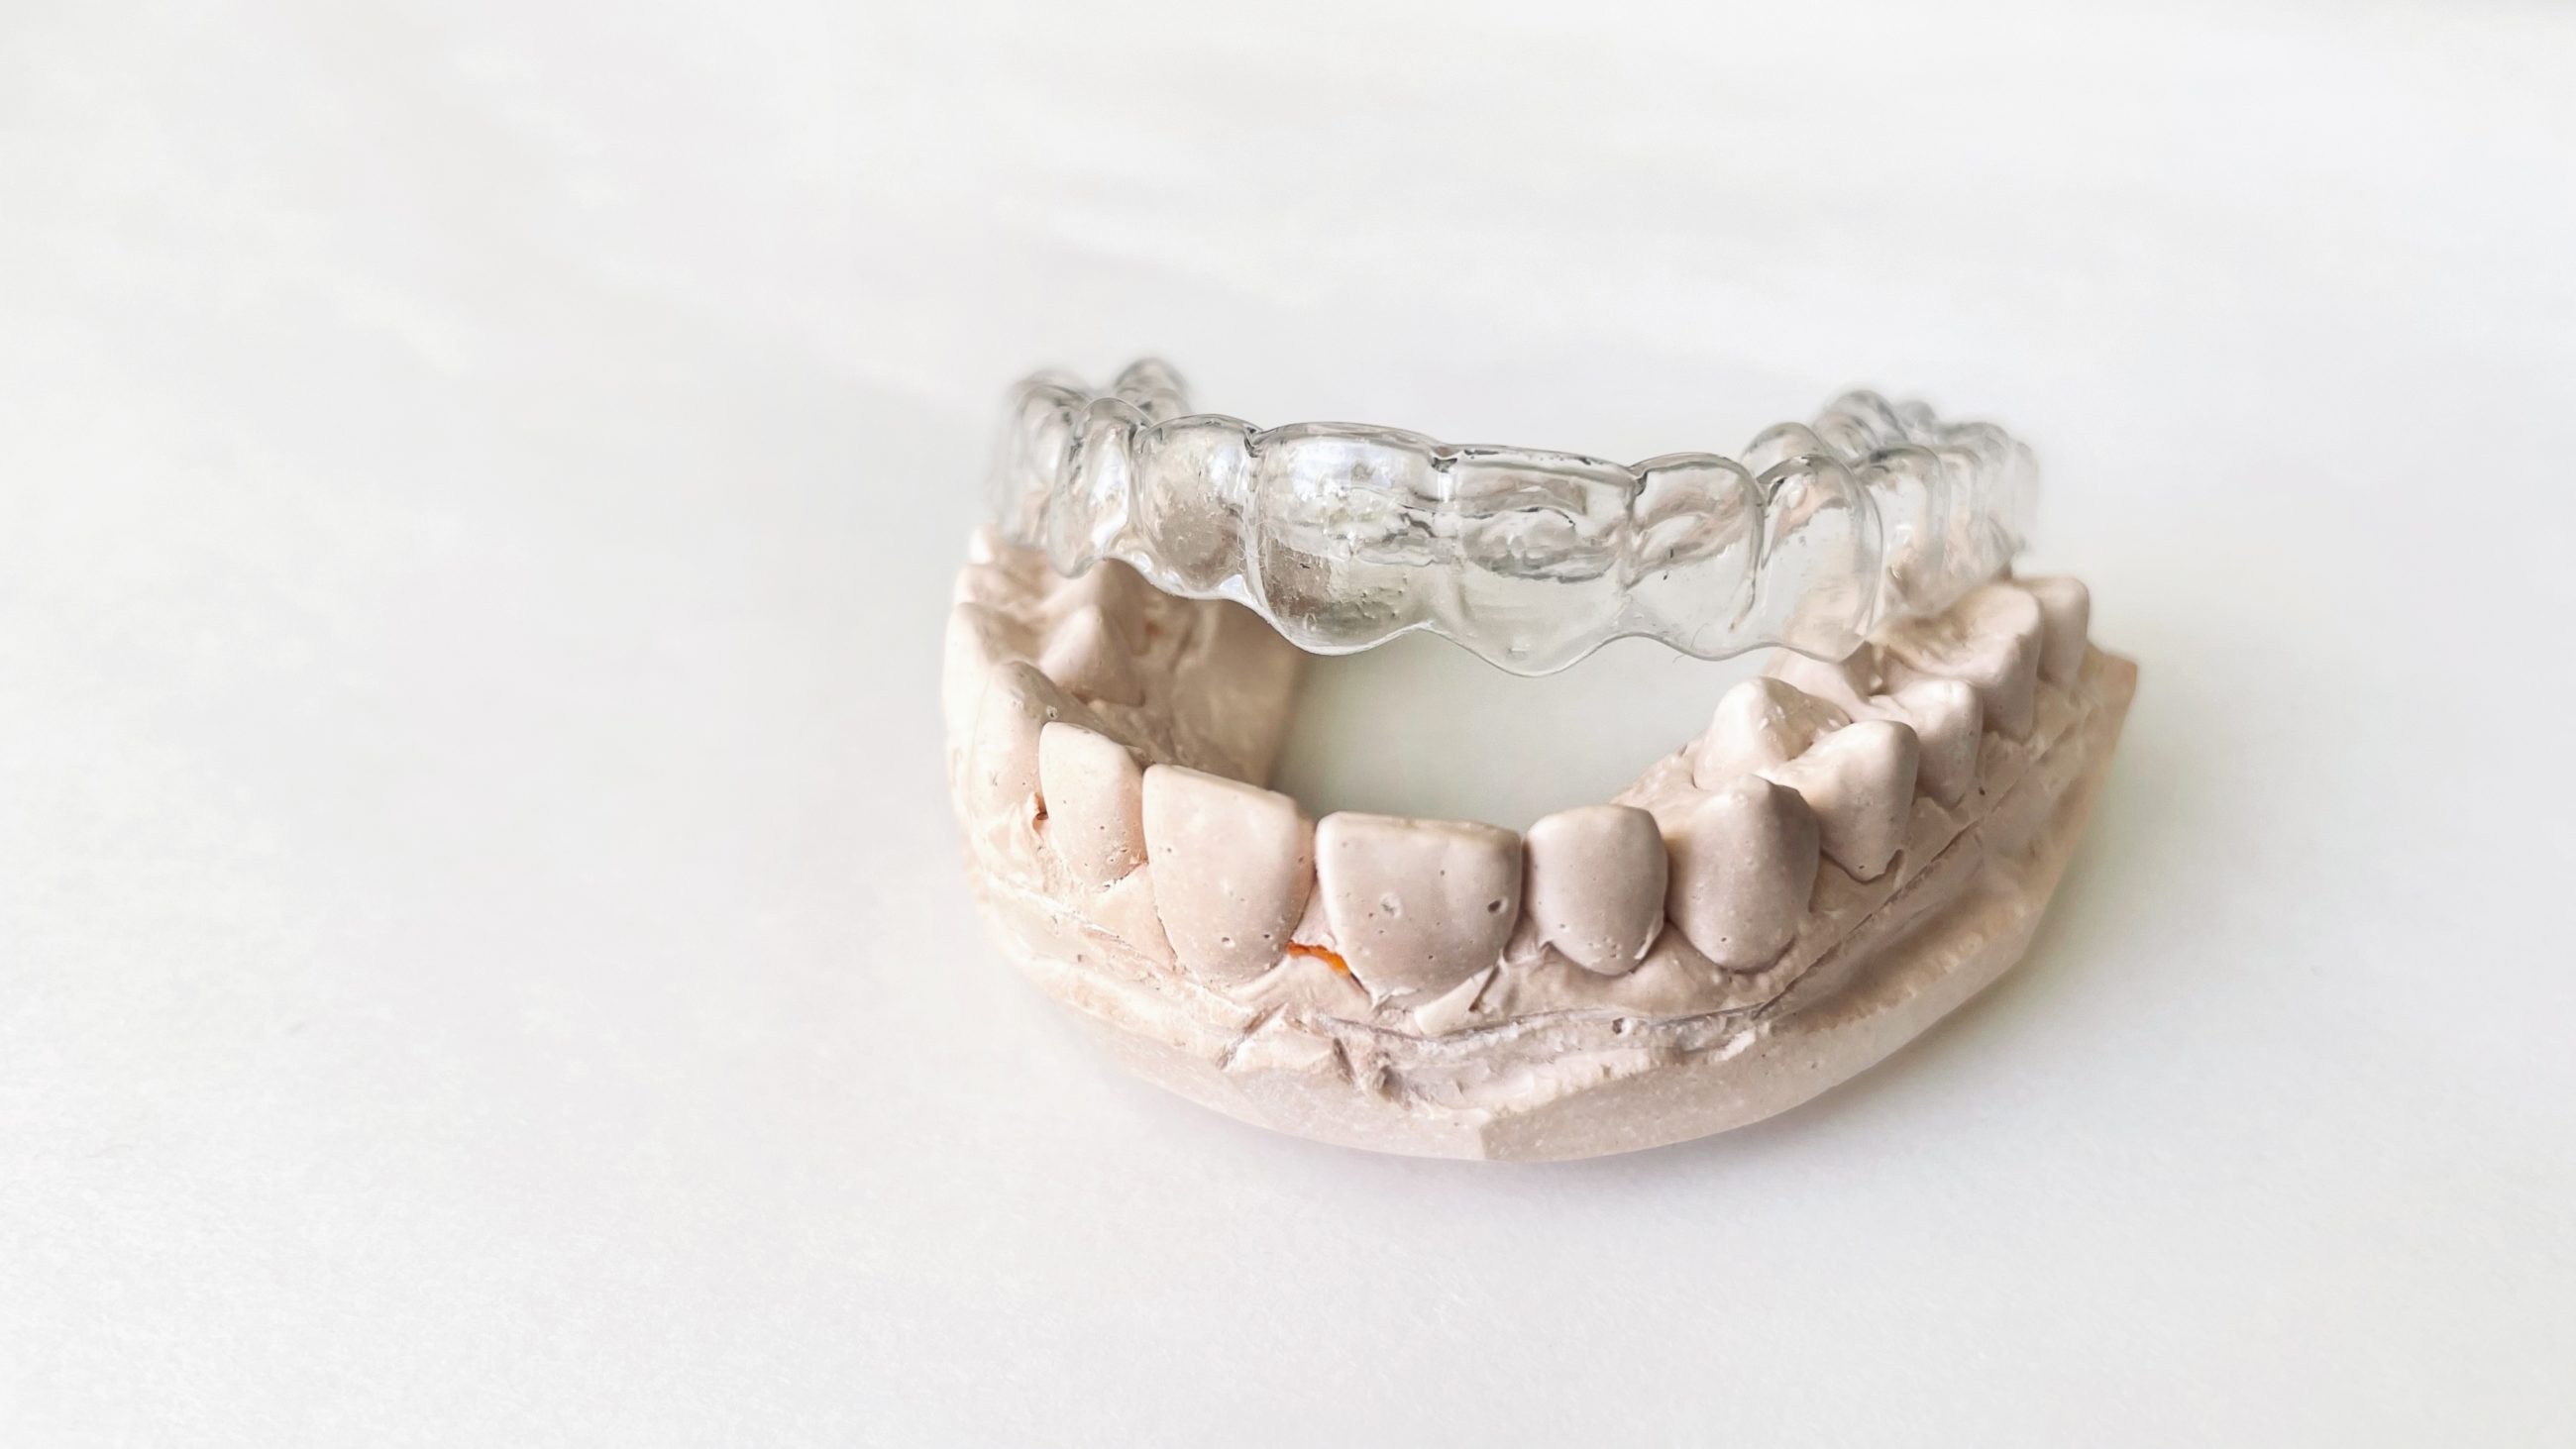 transparent invisible dental aligners or braces ap 2022 10 31 21 39 59 utc